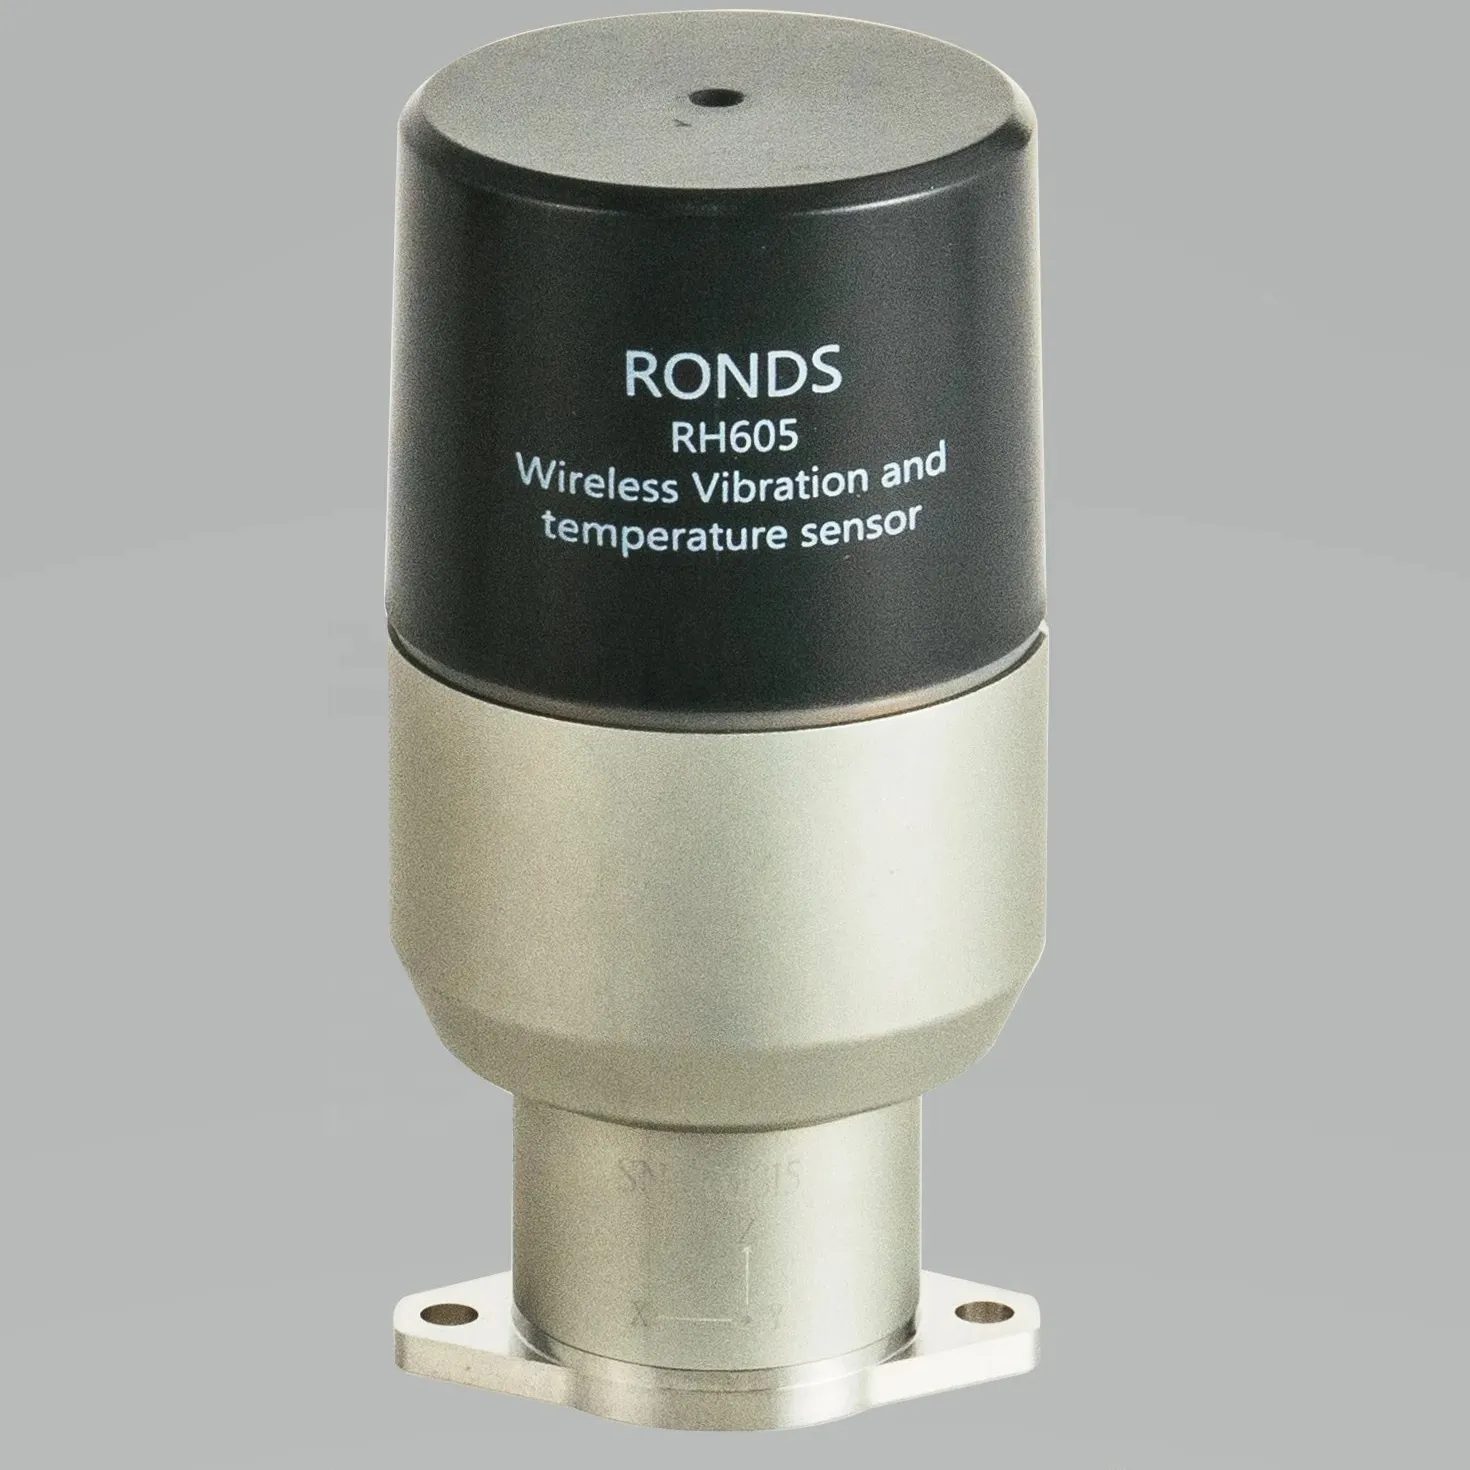 Endüstriyel makineleri izlemek için Ronds kablosuz titreşim sensörü RH605